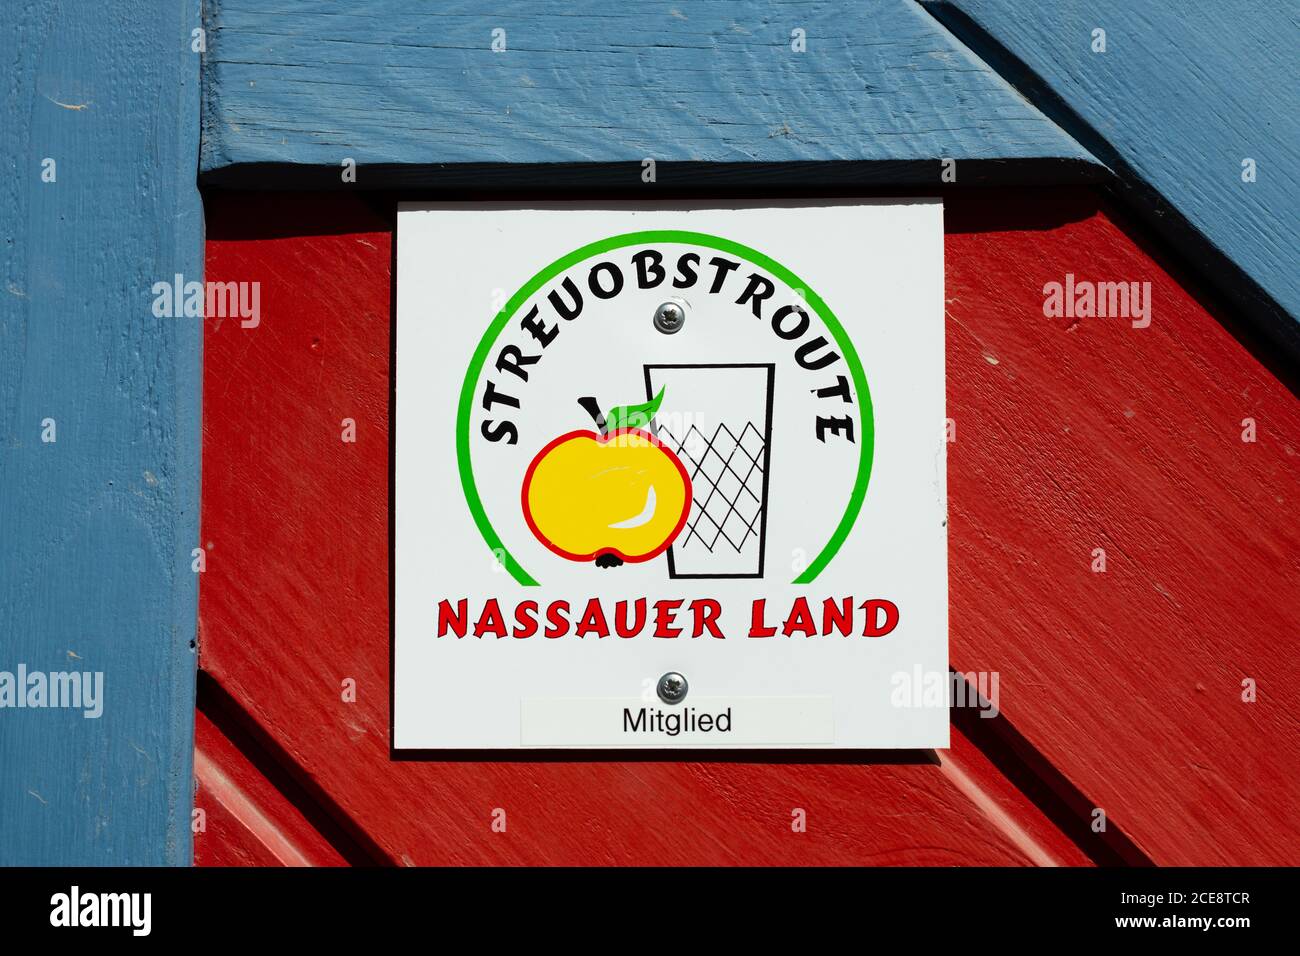 Orchard route dans la route Nassauer Land signe et logo - Allemagne Banque D'Images